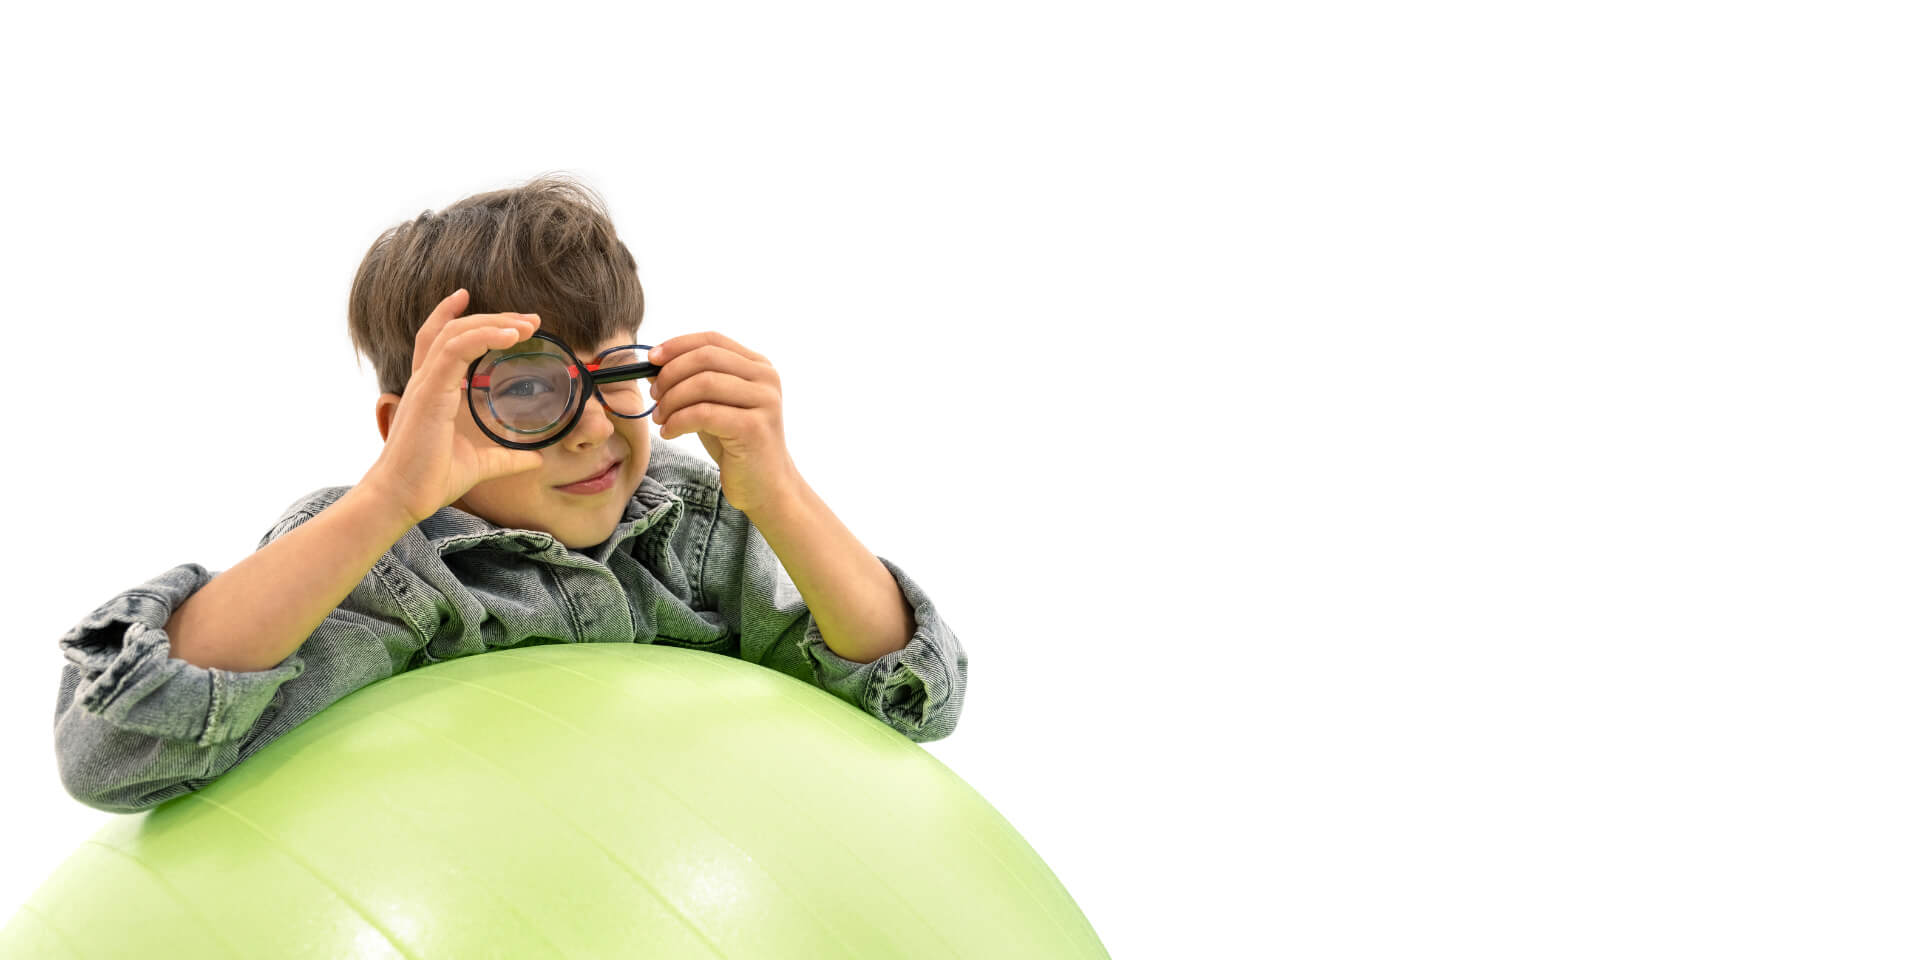 자이스 근시 관리 렌즈를 착용한 소년이 체조 공에 몸을 기대고 눈 앞에 확대경을 들고 있다.